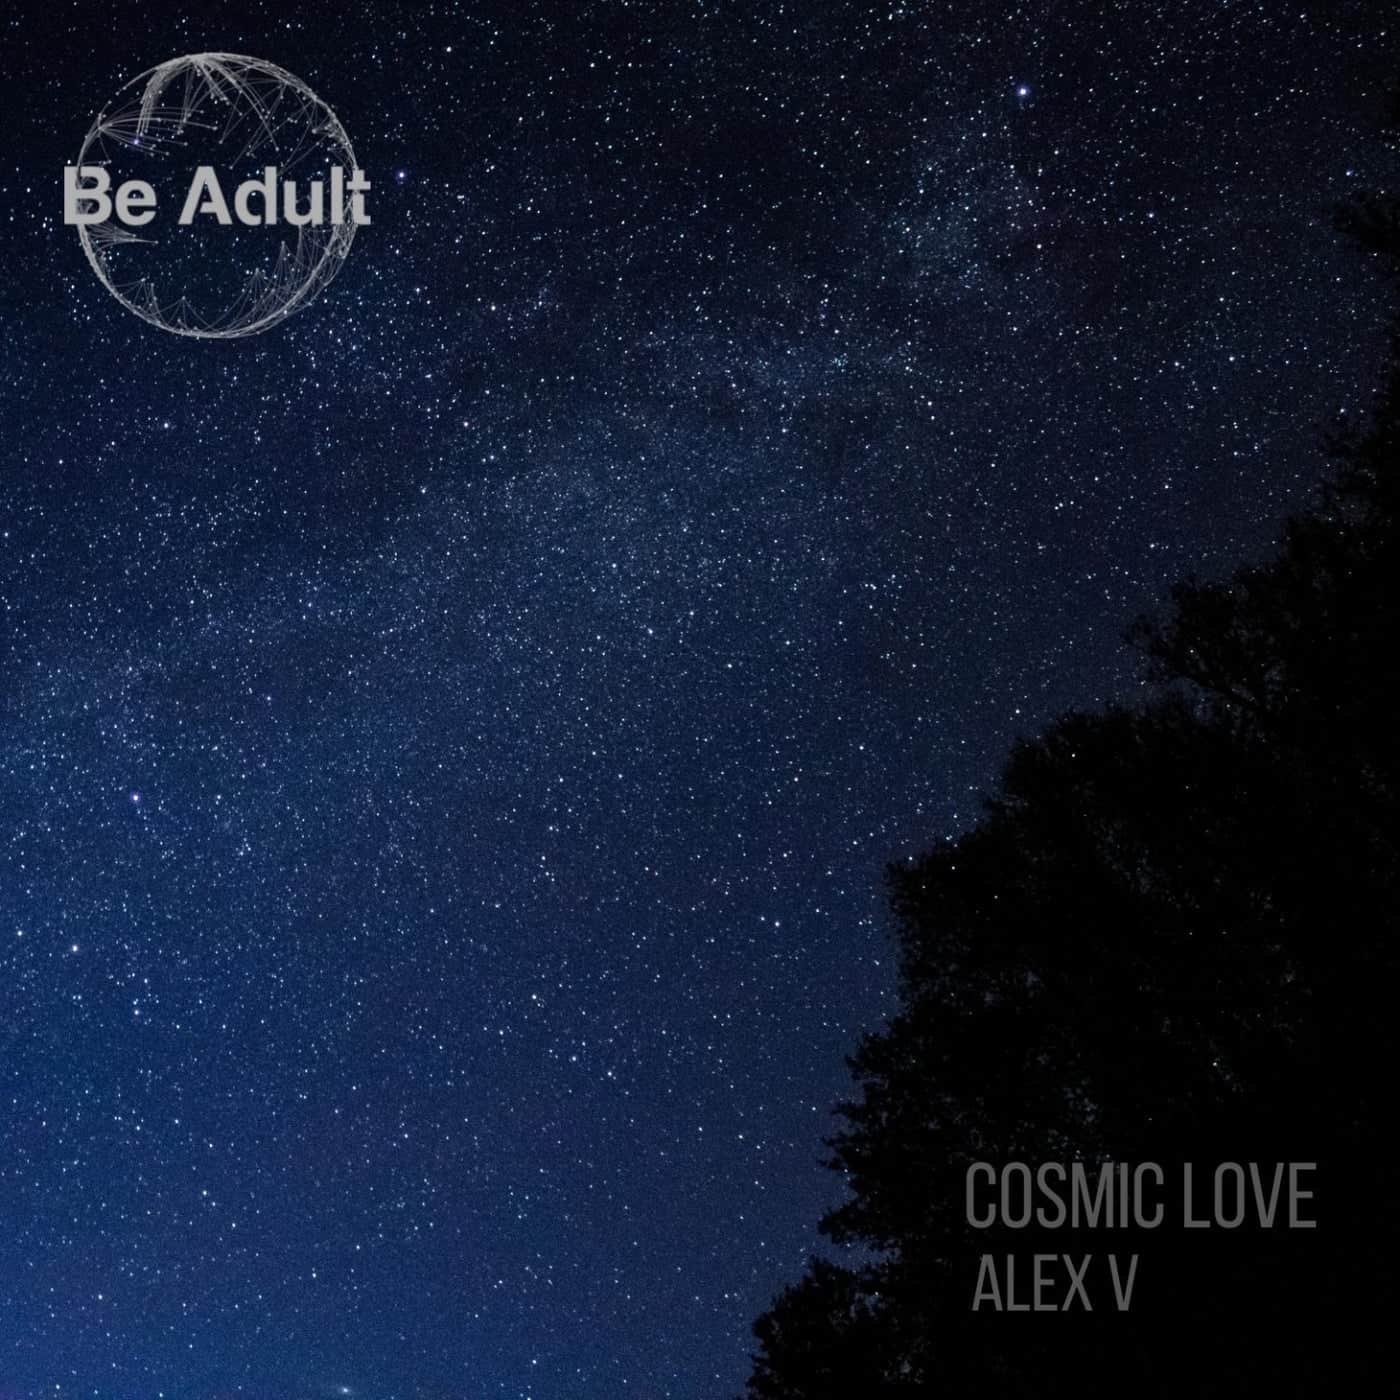 image cover: Alex V - Cosmic Love / 243